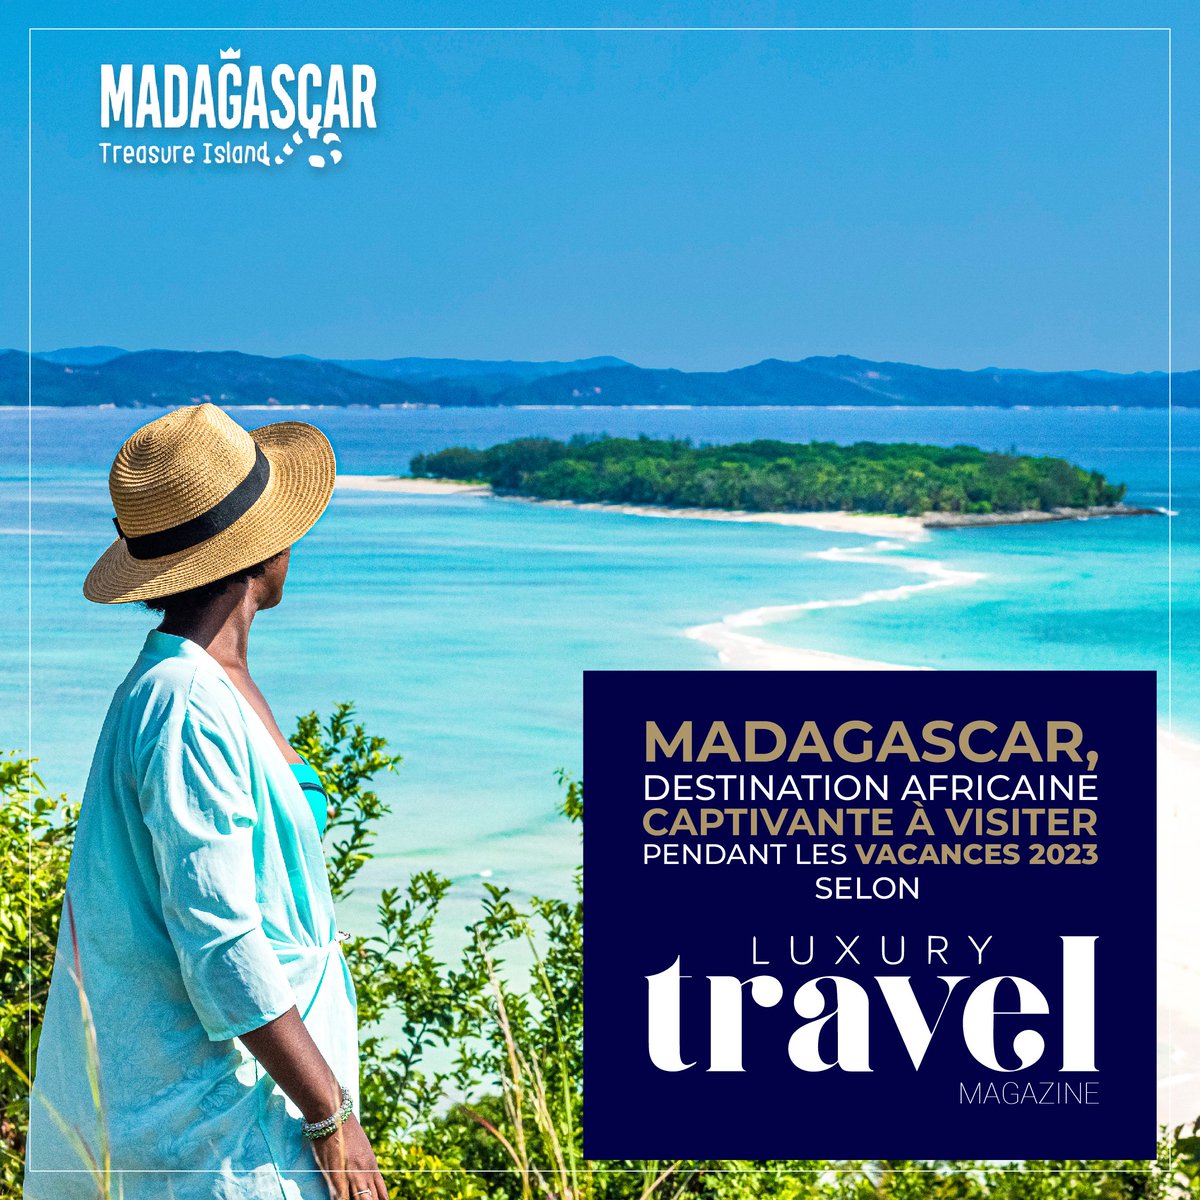 🇲🇬Madagascar est l'une des cinq destinations africaines captivantes à visiter pendant les vacances 2023 selon @LuxuryTravelmag. 
#VisitMadagascar #MyMadagascar